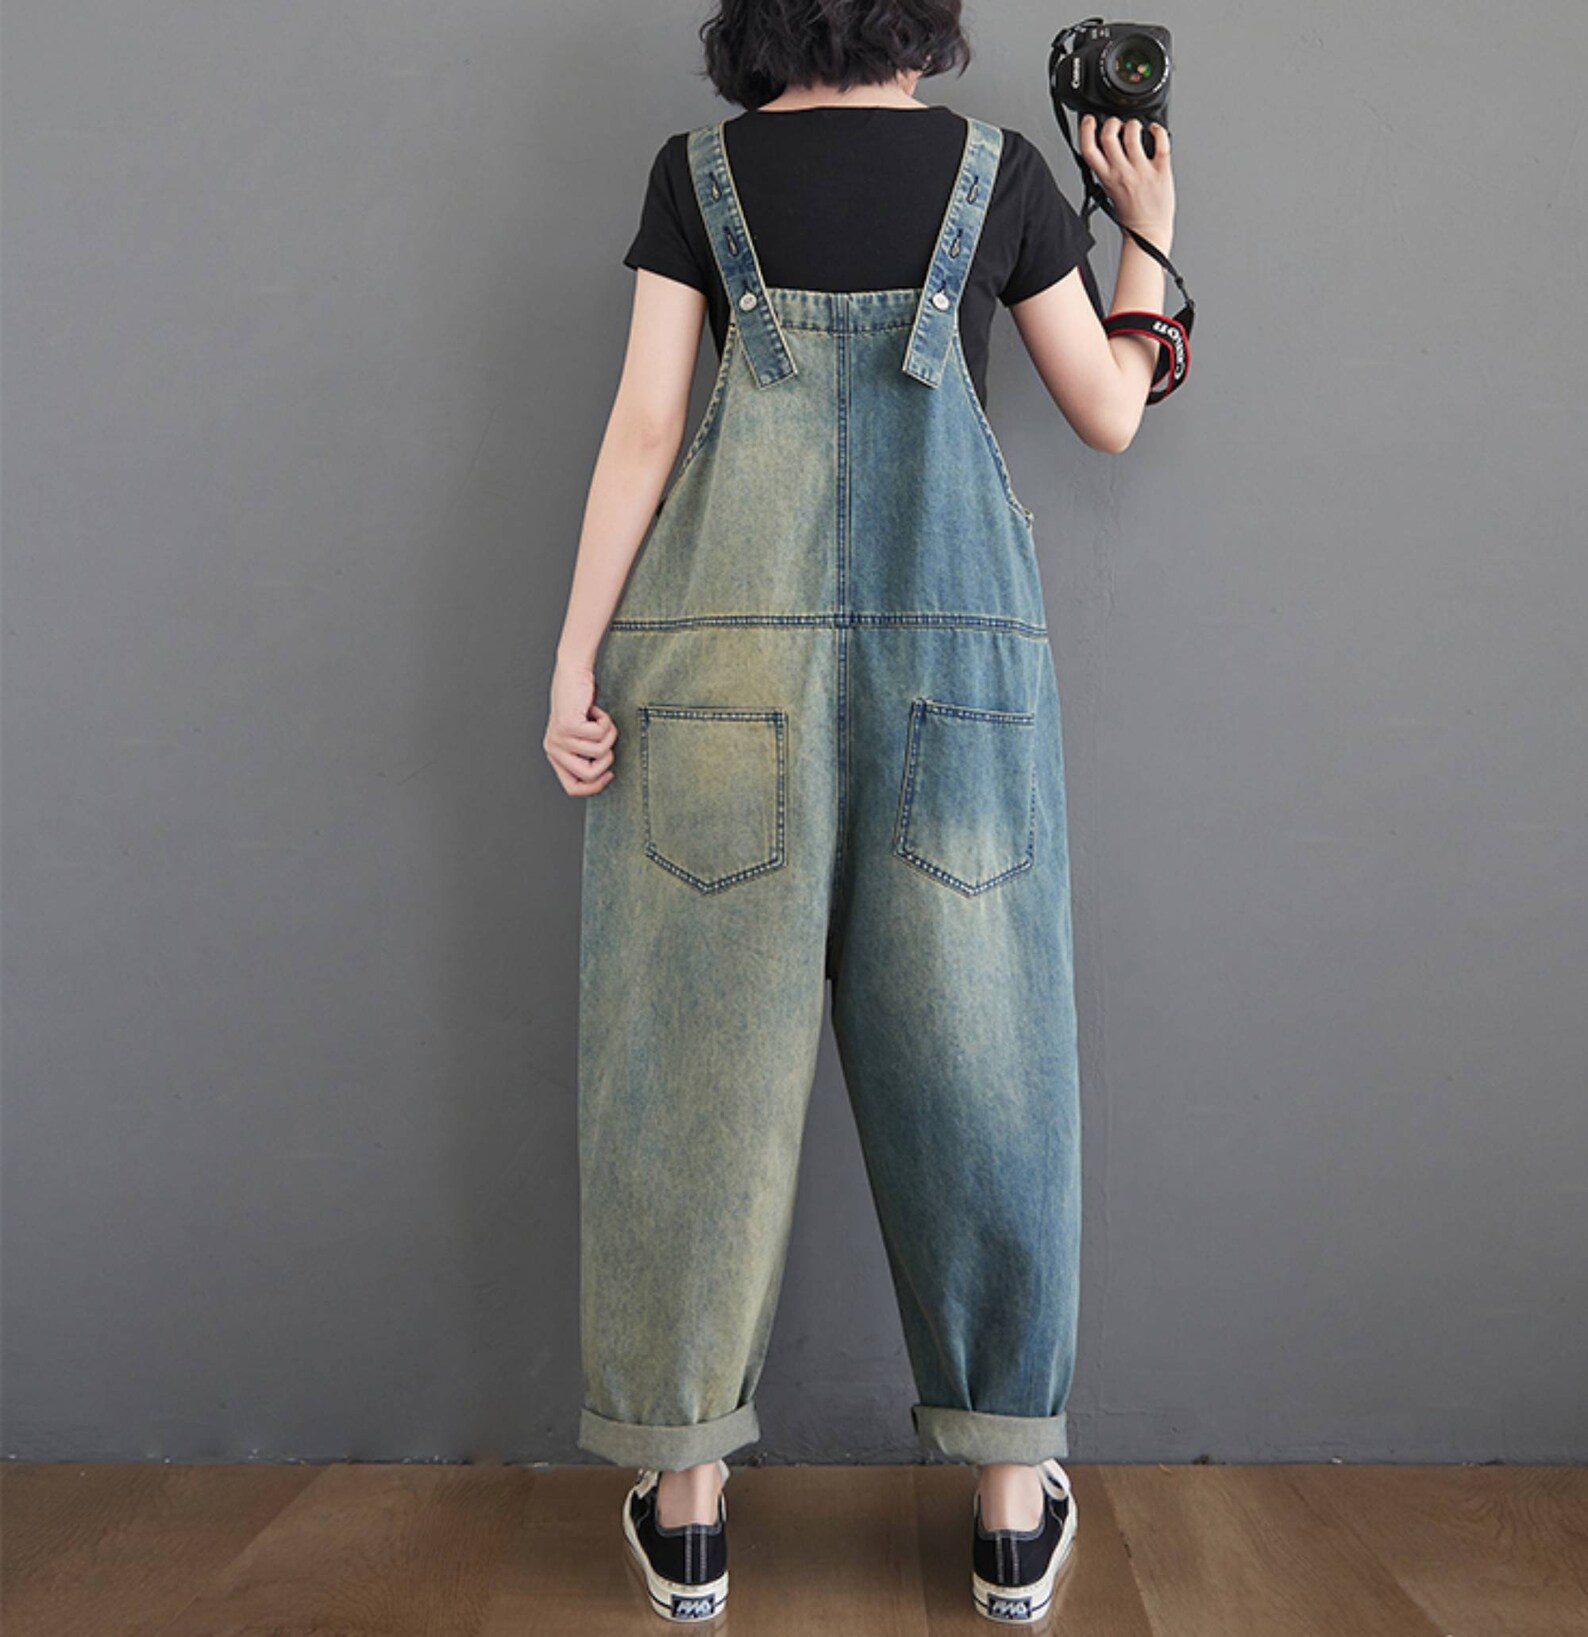 Stick Cloth Denim Overalls Baggy Jeans Jumpsuits Plus Size - Etsy